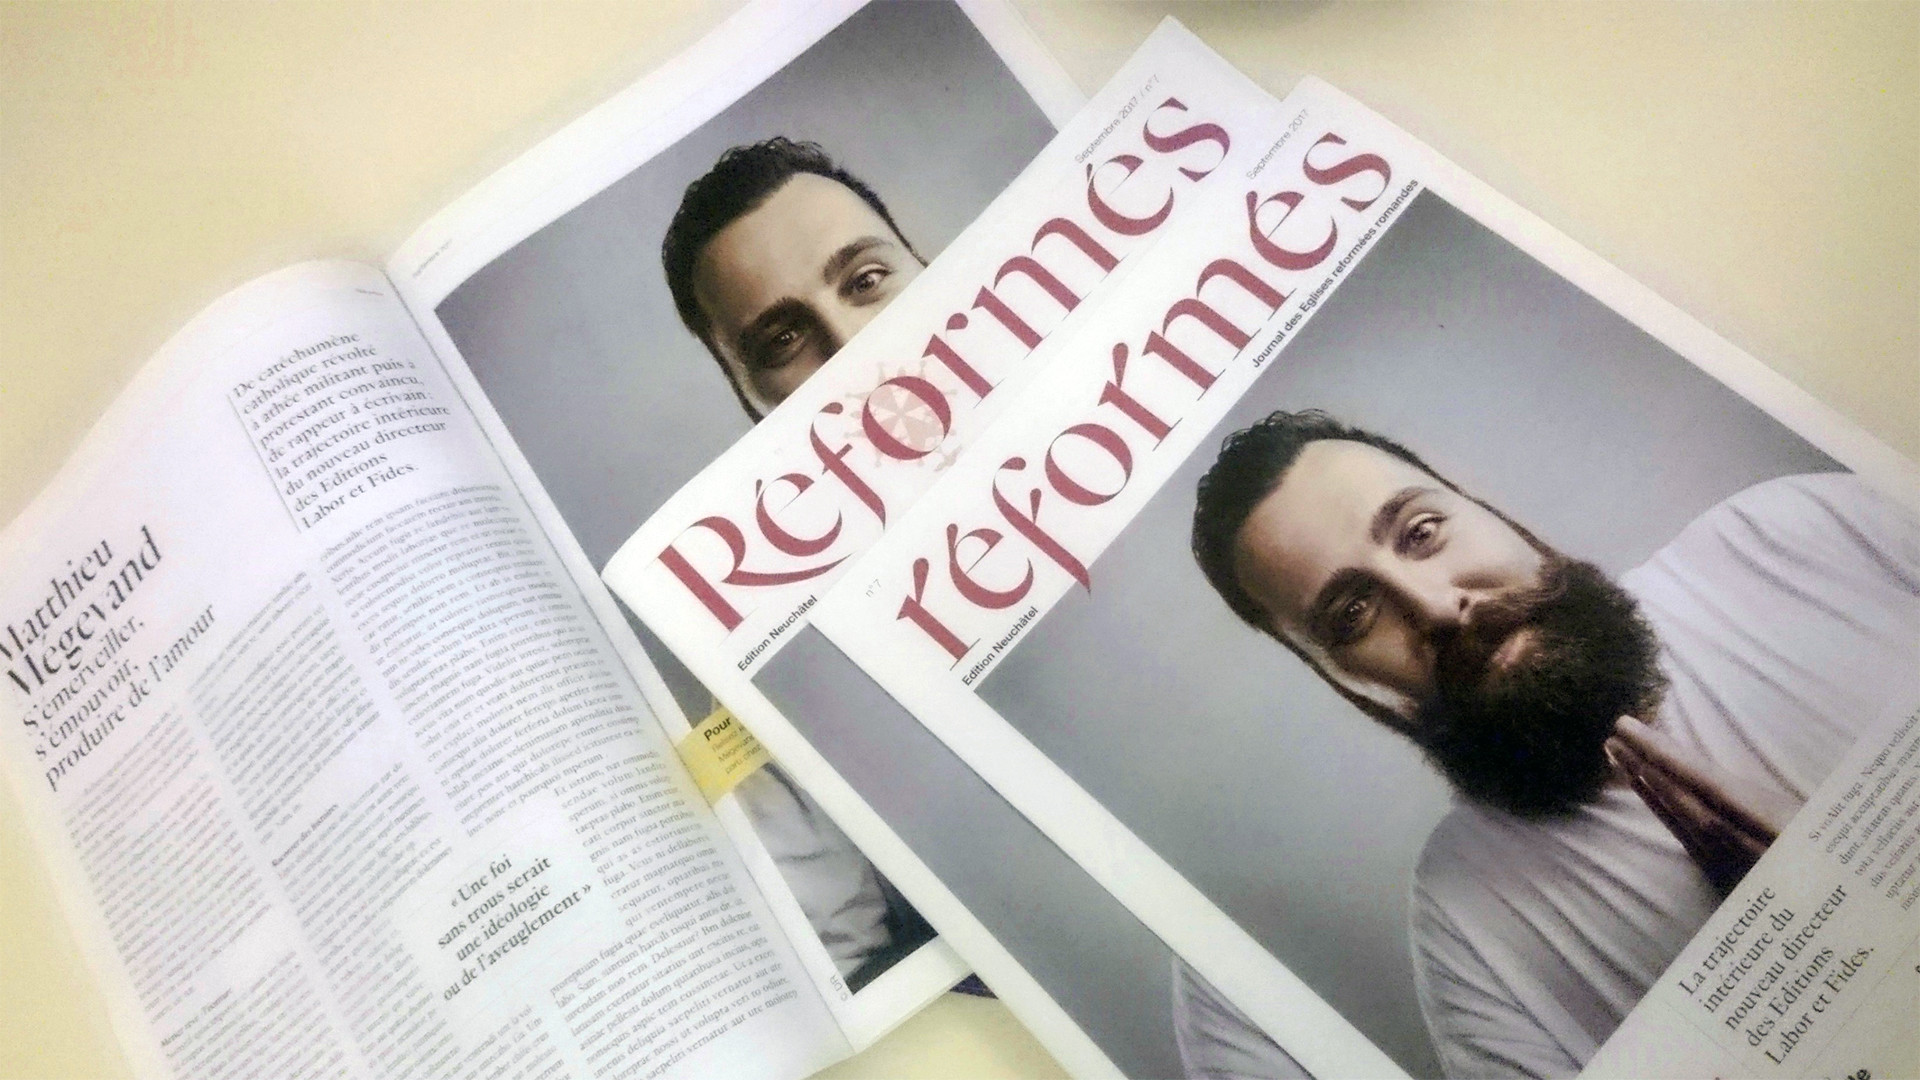 Pages de couverture de "Réformés", nouvelle publication intercantonale protestante (Photo:Joël Burri/Protestinfo)